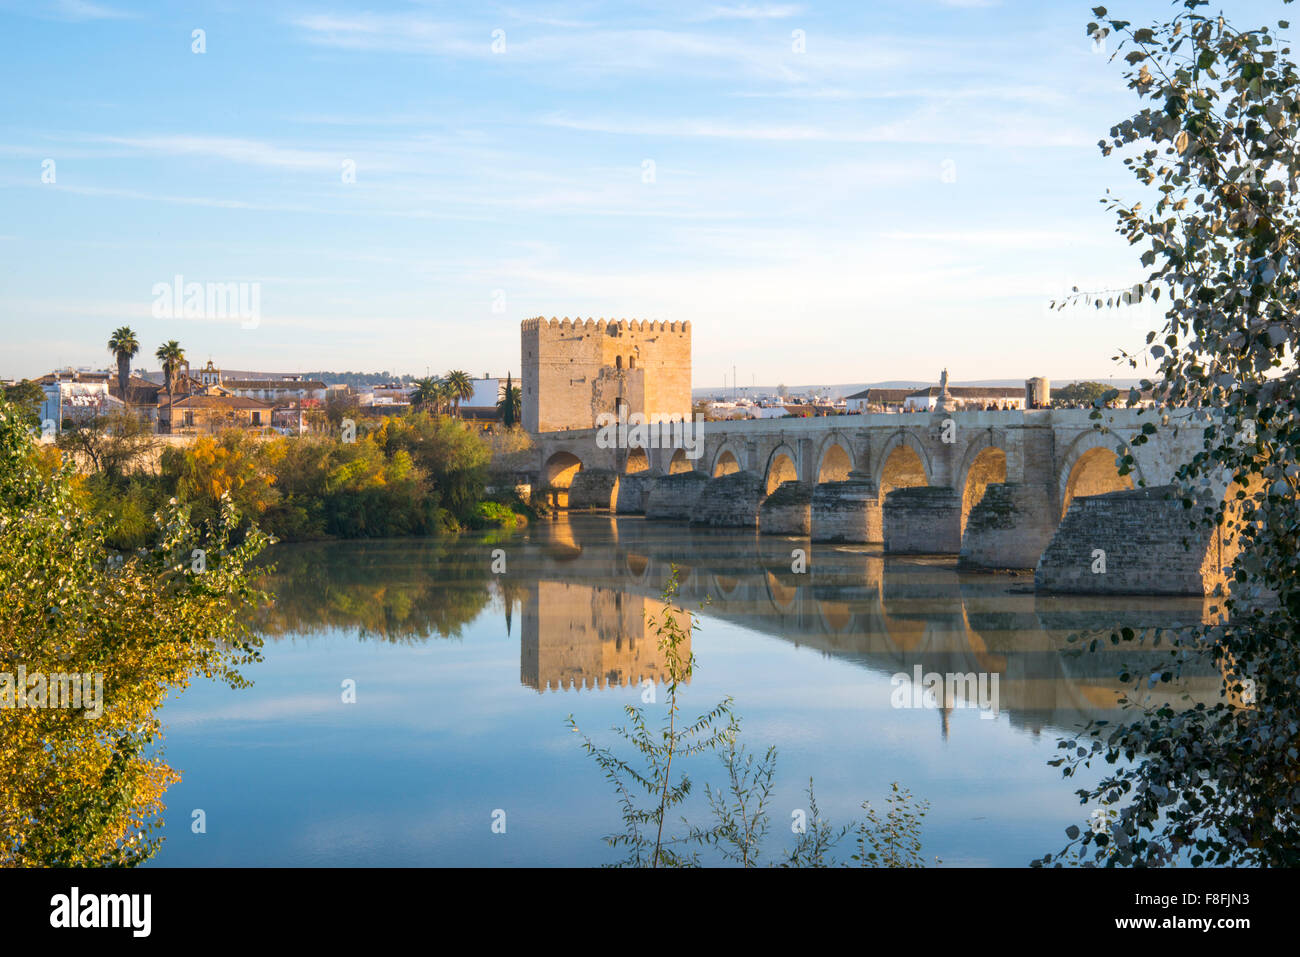 Roman bridge over river Guadalquivir. Cordoba, Spain. Stock Photo